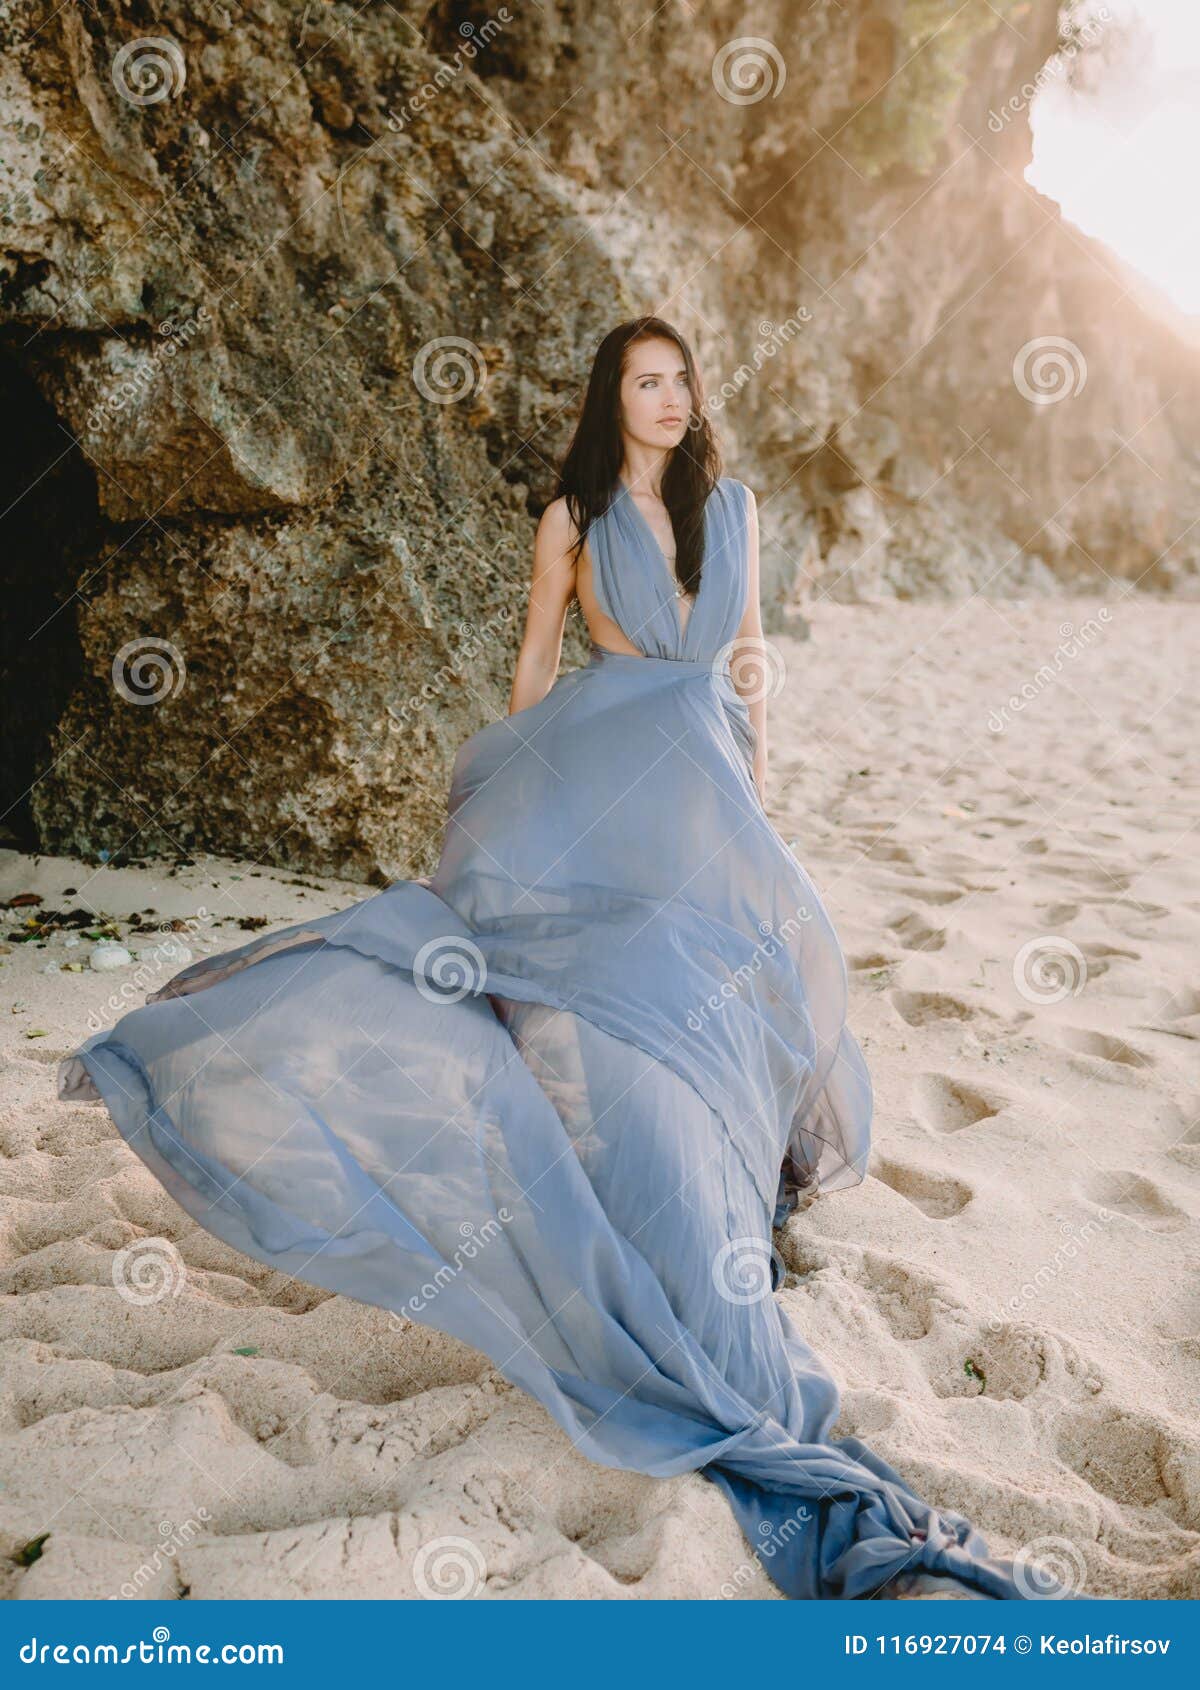 impaciente Para exponer Izar Retrato De La Novia Morena En Vestido De Boda Azul En La Playa Con Colores  De La Puesta Del Sol Foto de archivo - Imagen de manera, morena: 116927074